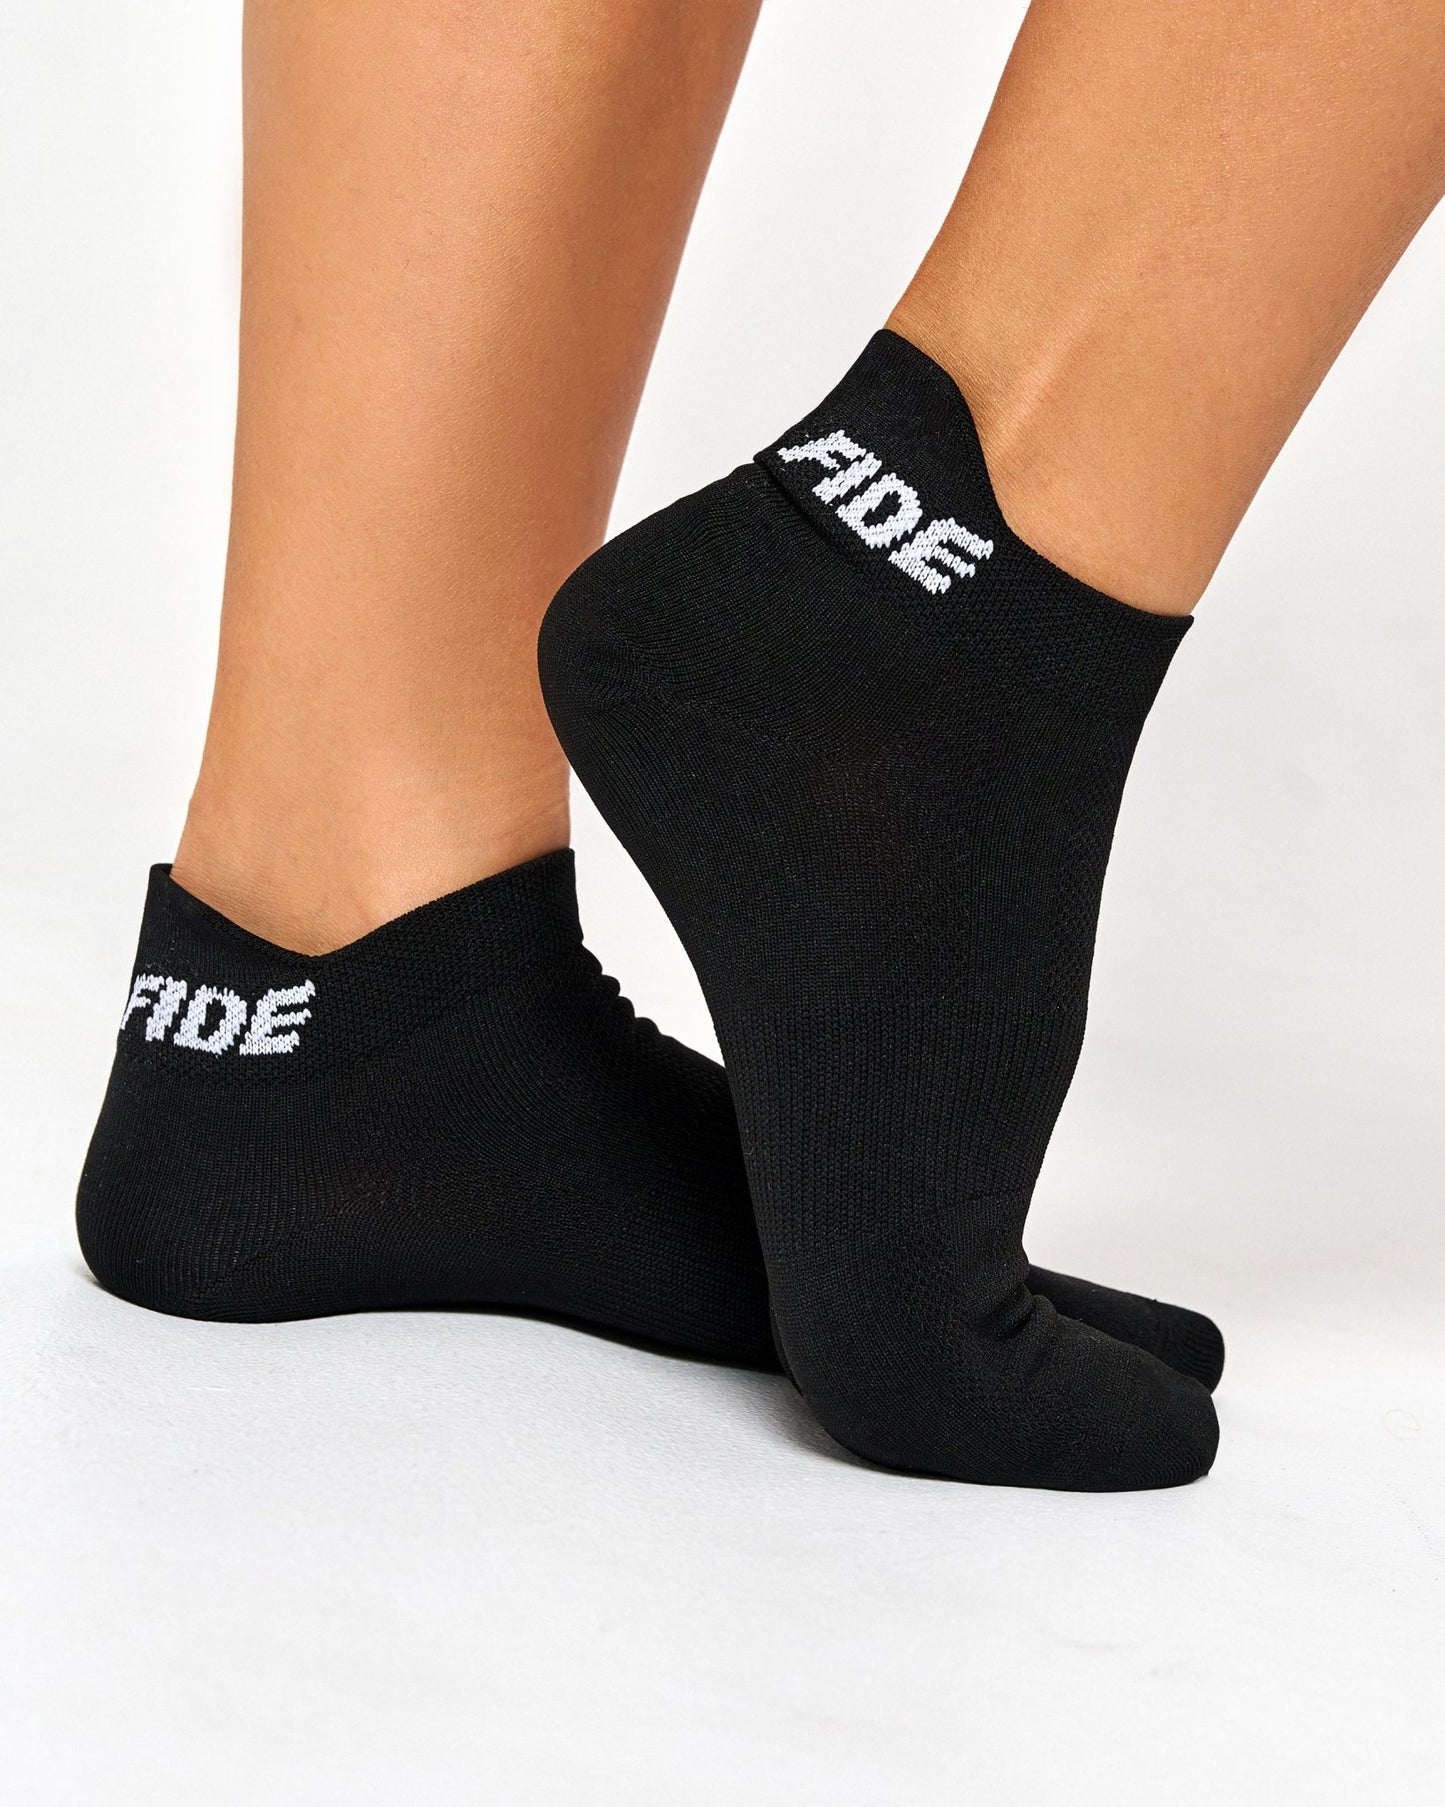 Standard Set of Socks (3 pairs) - Bona Fide